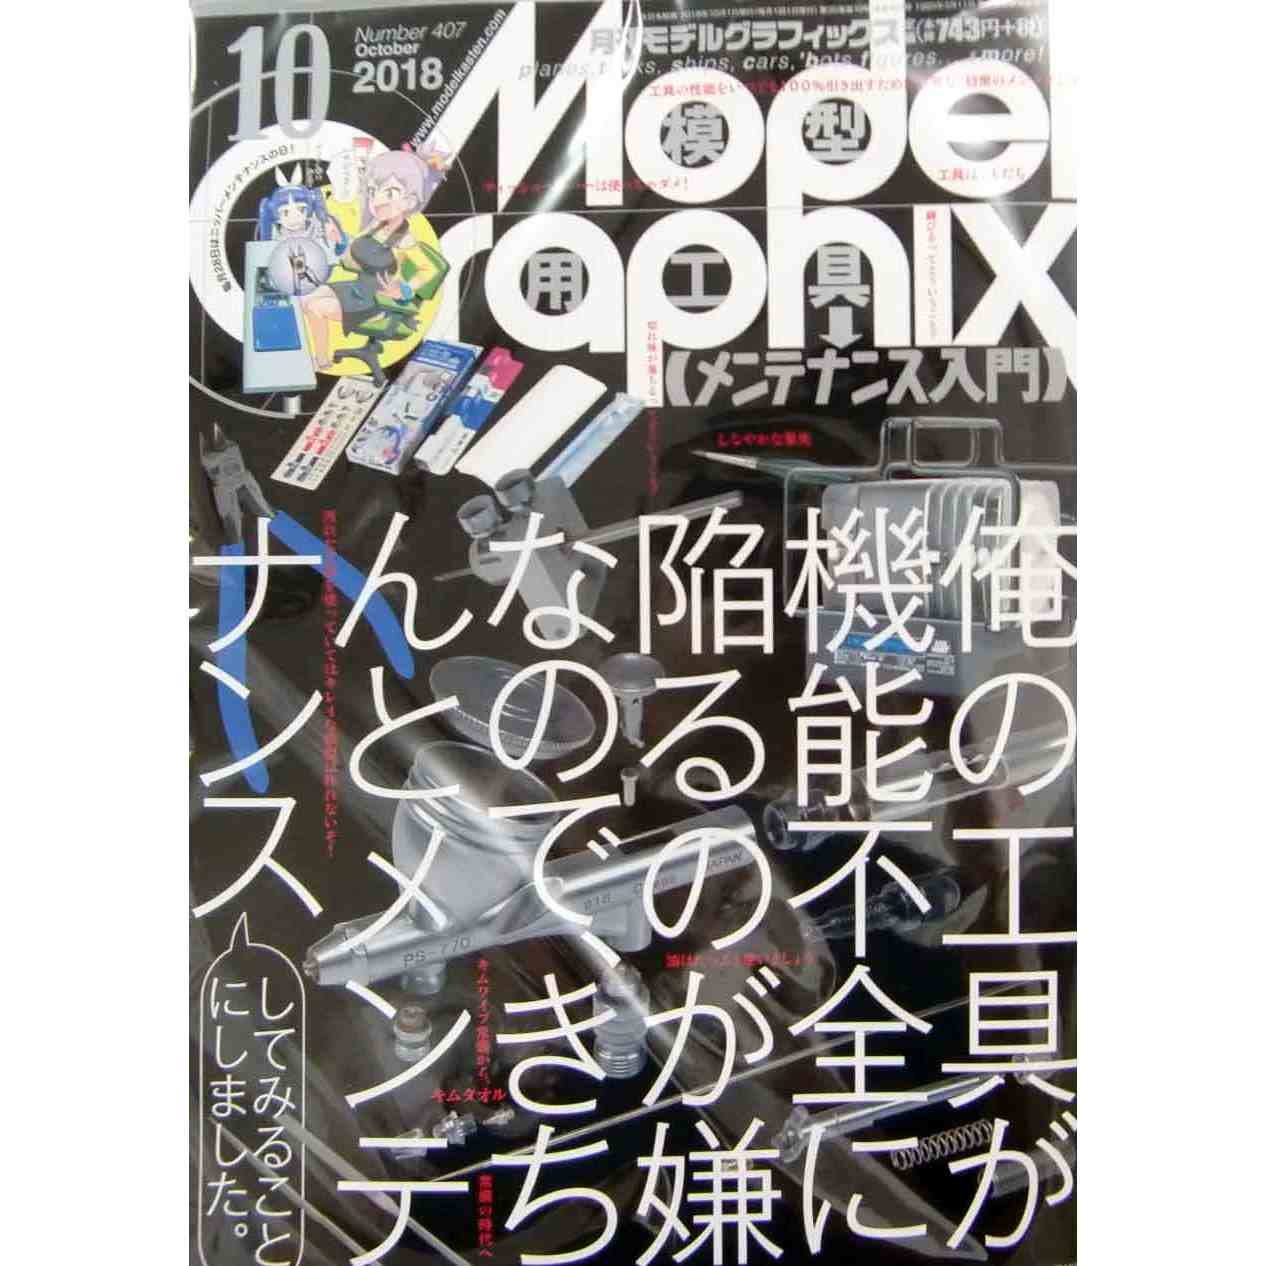 【新製品】モデルグラフィックス Vol.407 2018年10月号 模型用工具 メンテナンス入門